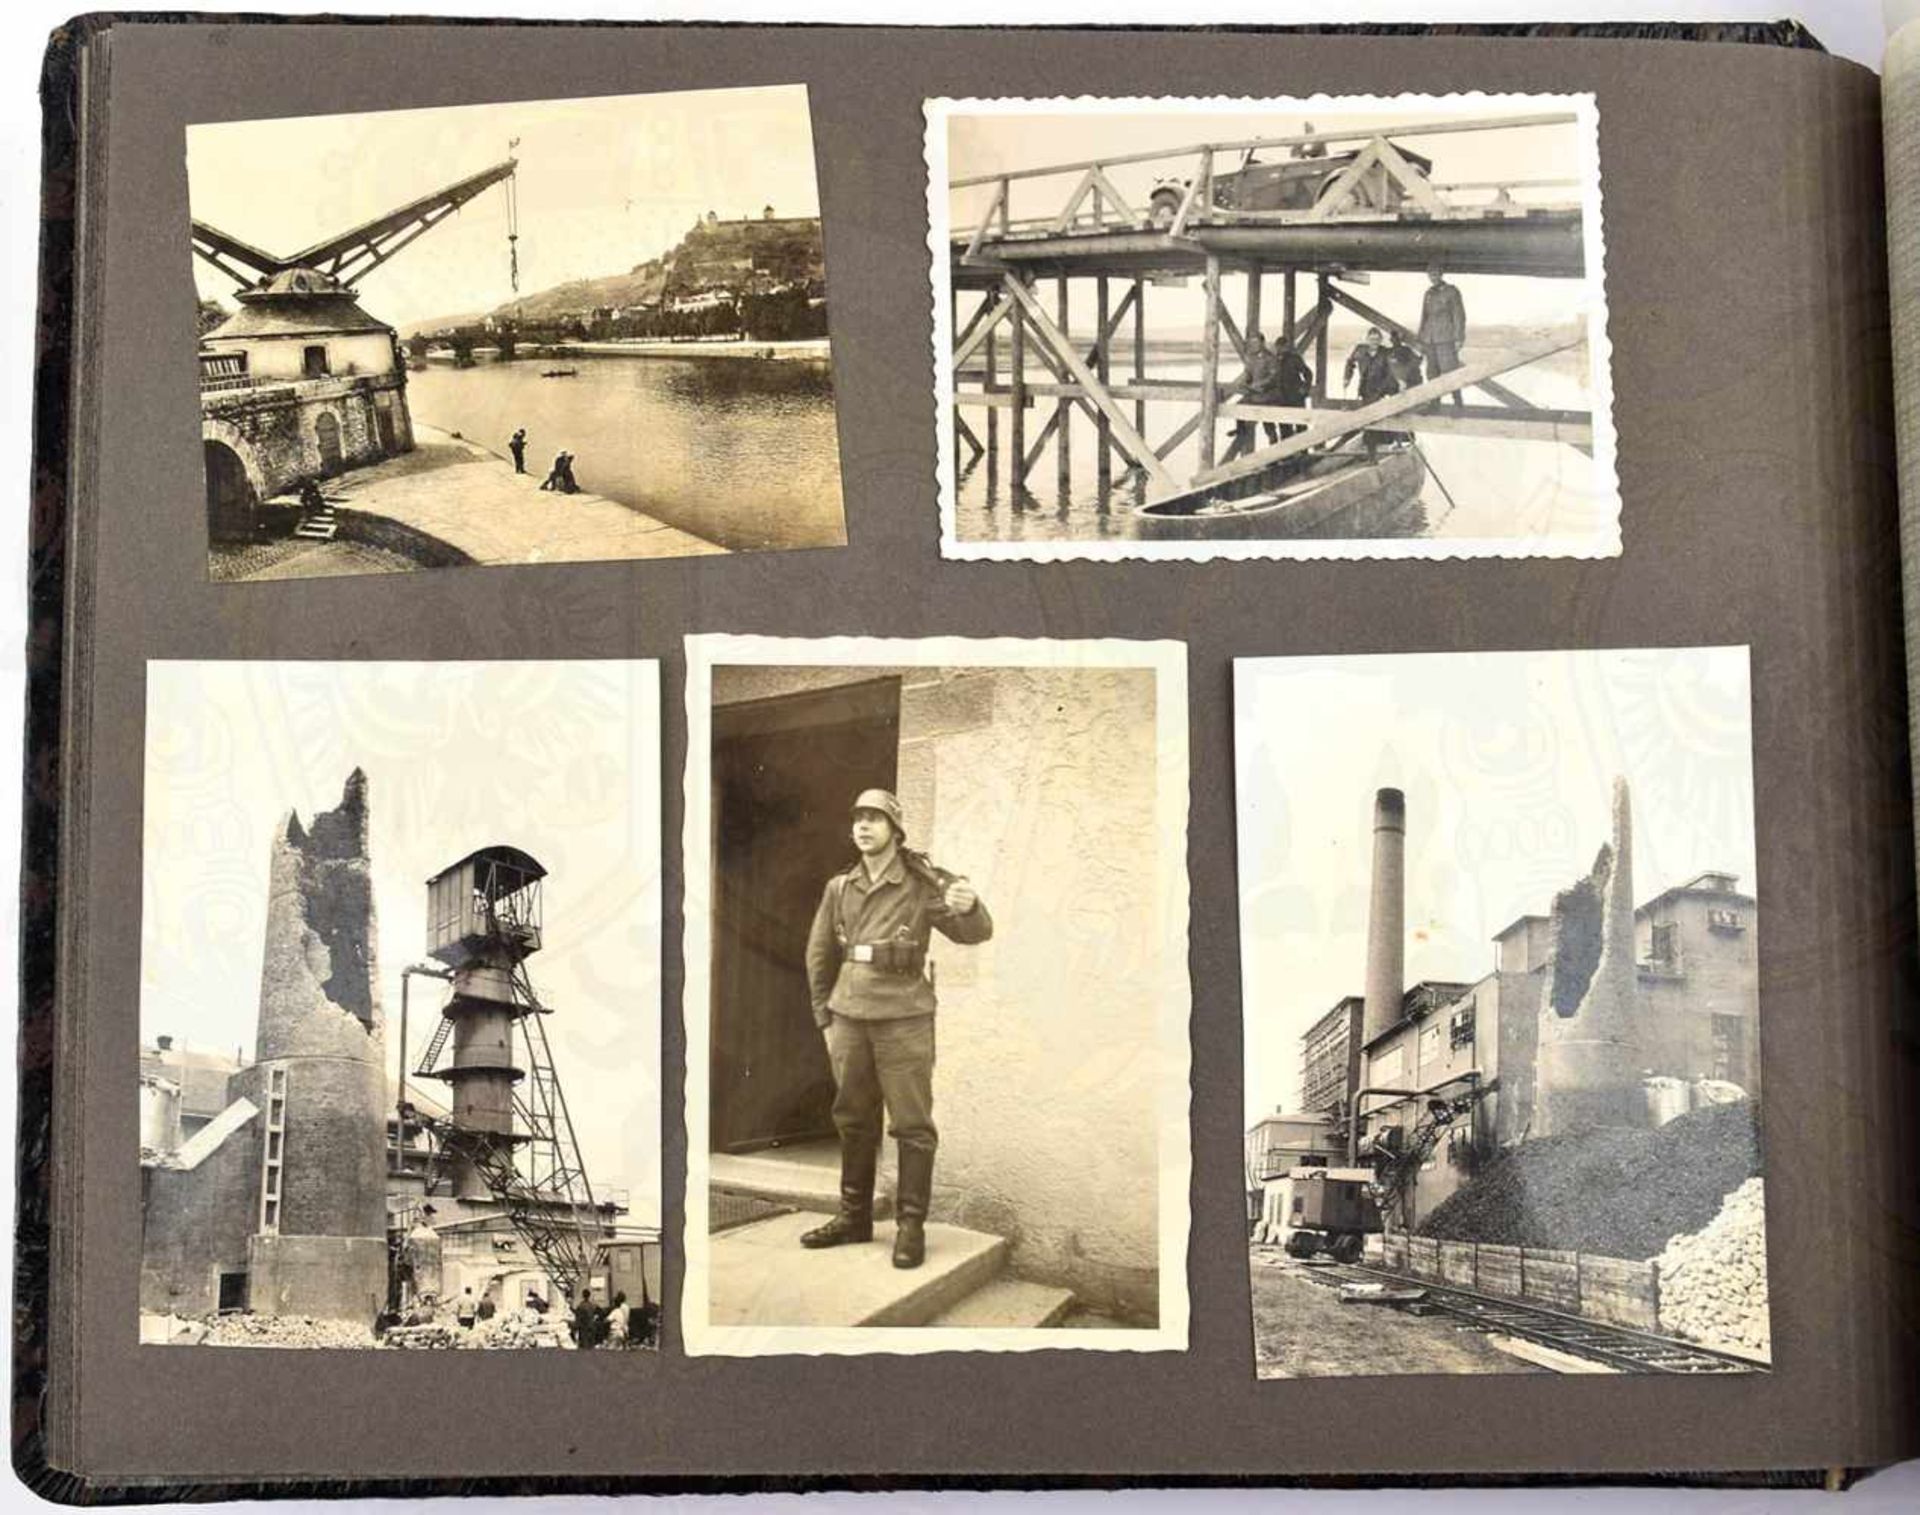 FOTOALBUM SCHÜTZEN-RGT. 10, 1939/1940, 118 Fotos u. 6 AK, Ausbildung, Sport, Schießübungen mit - Bild 4 aus 4